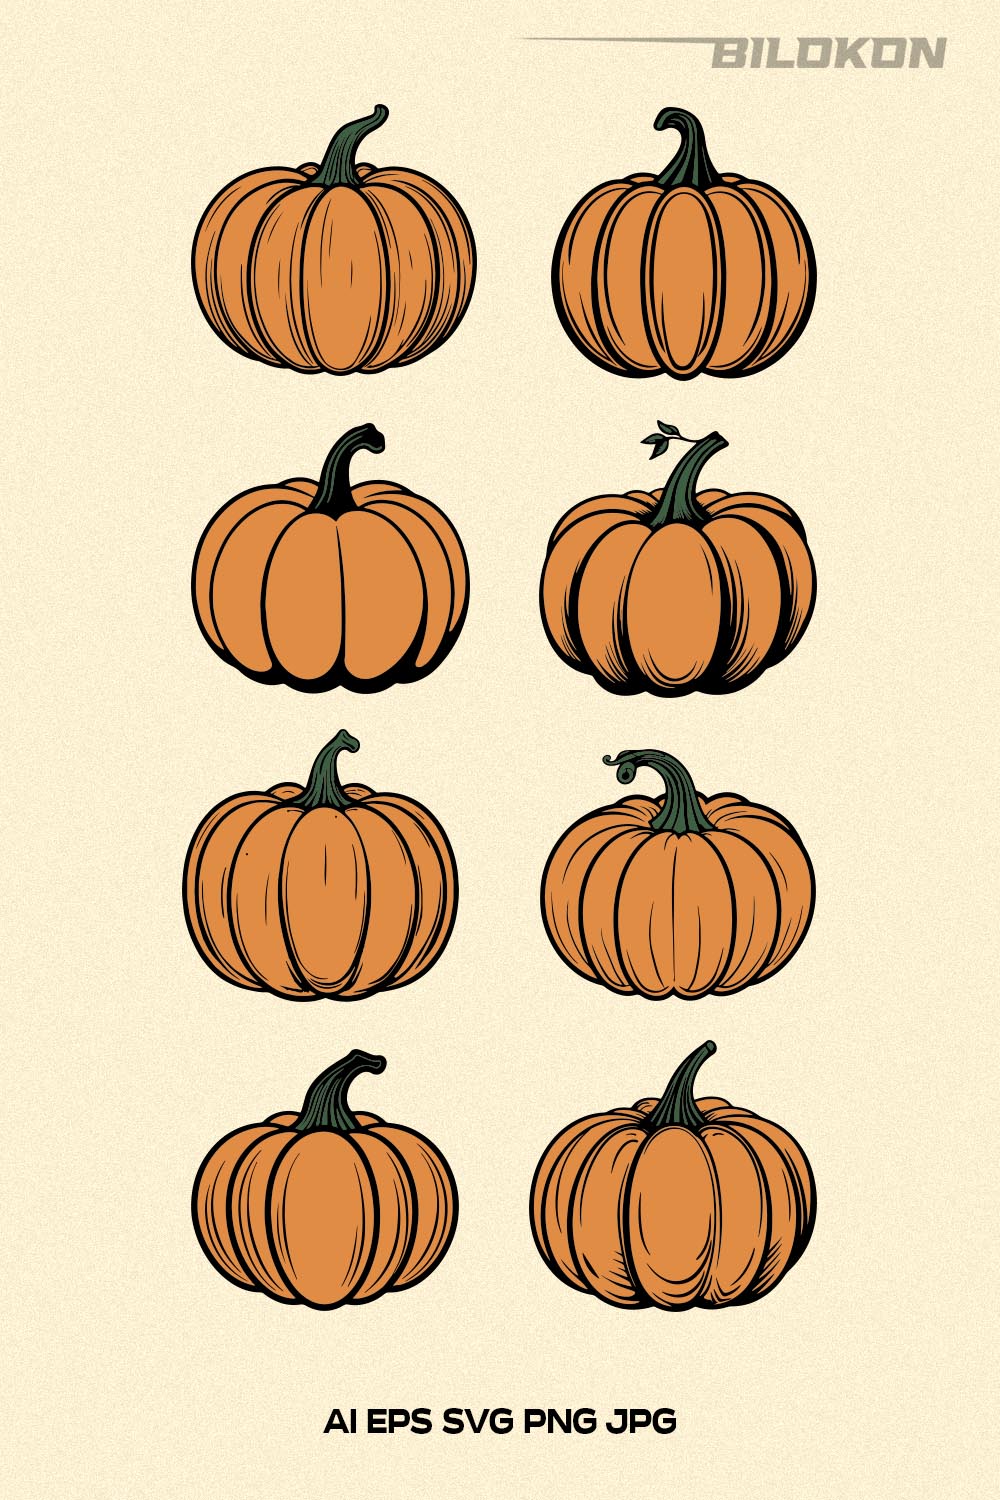 Autumn pumpkin set, Fall pumpkin, Vector, SVG pinterest preview image.